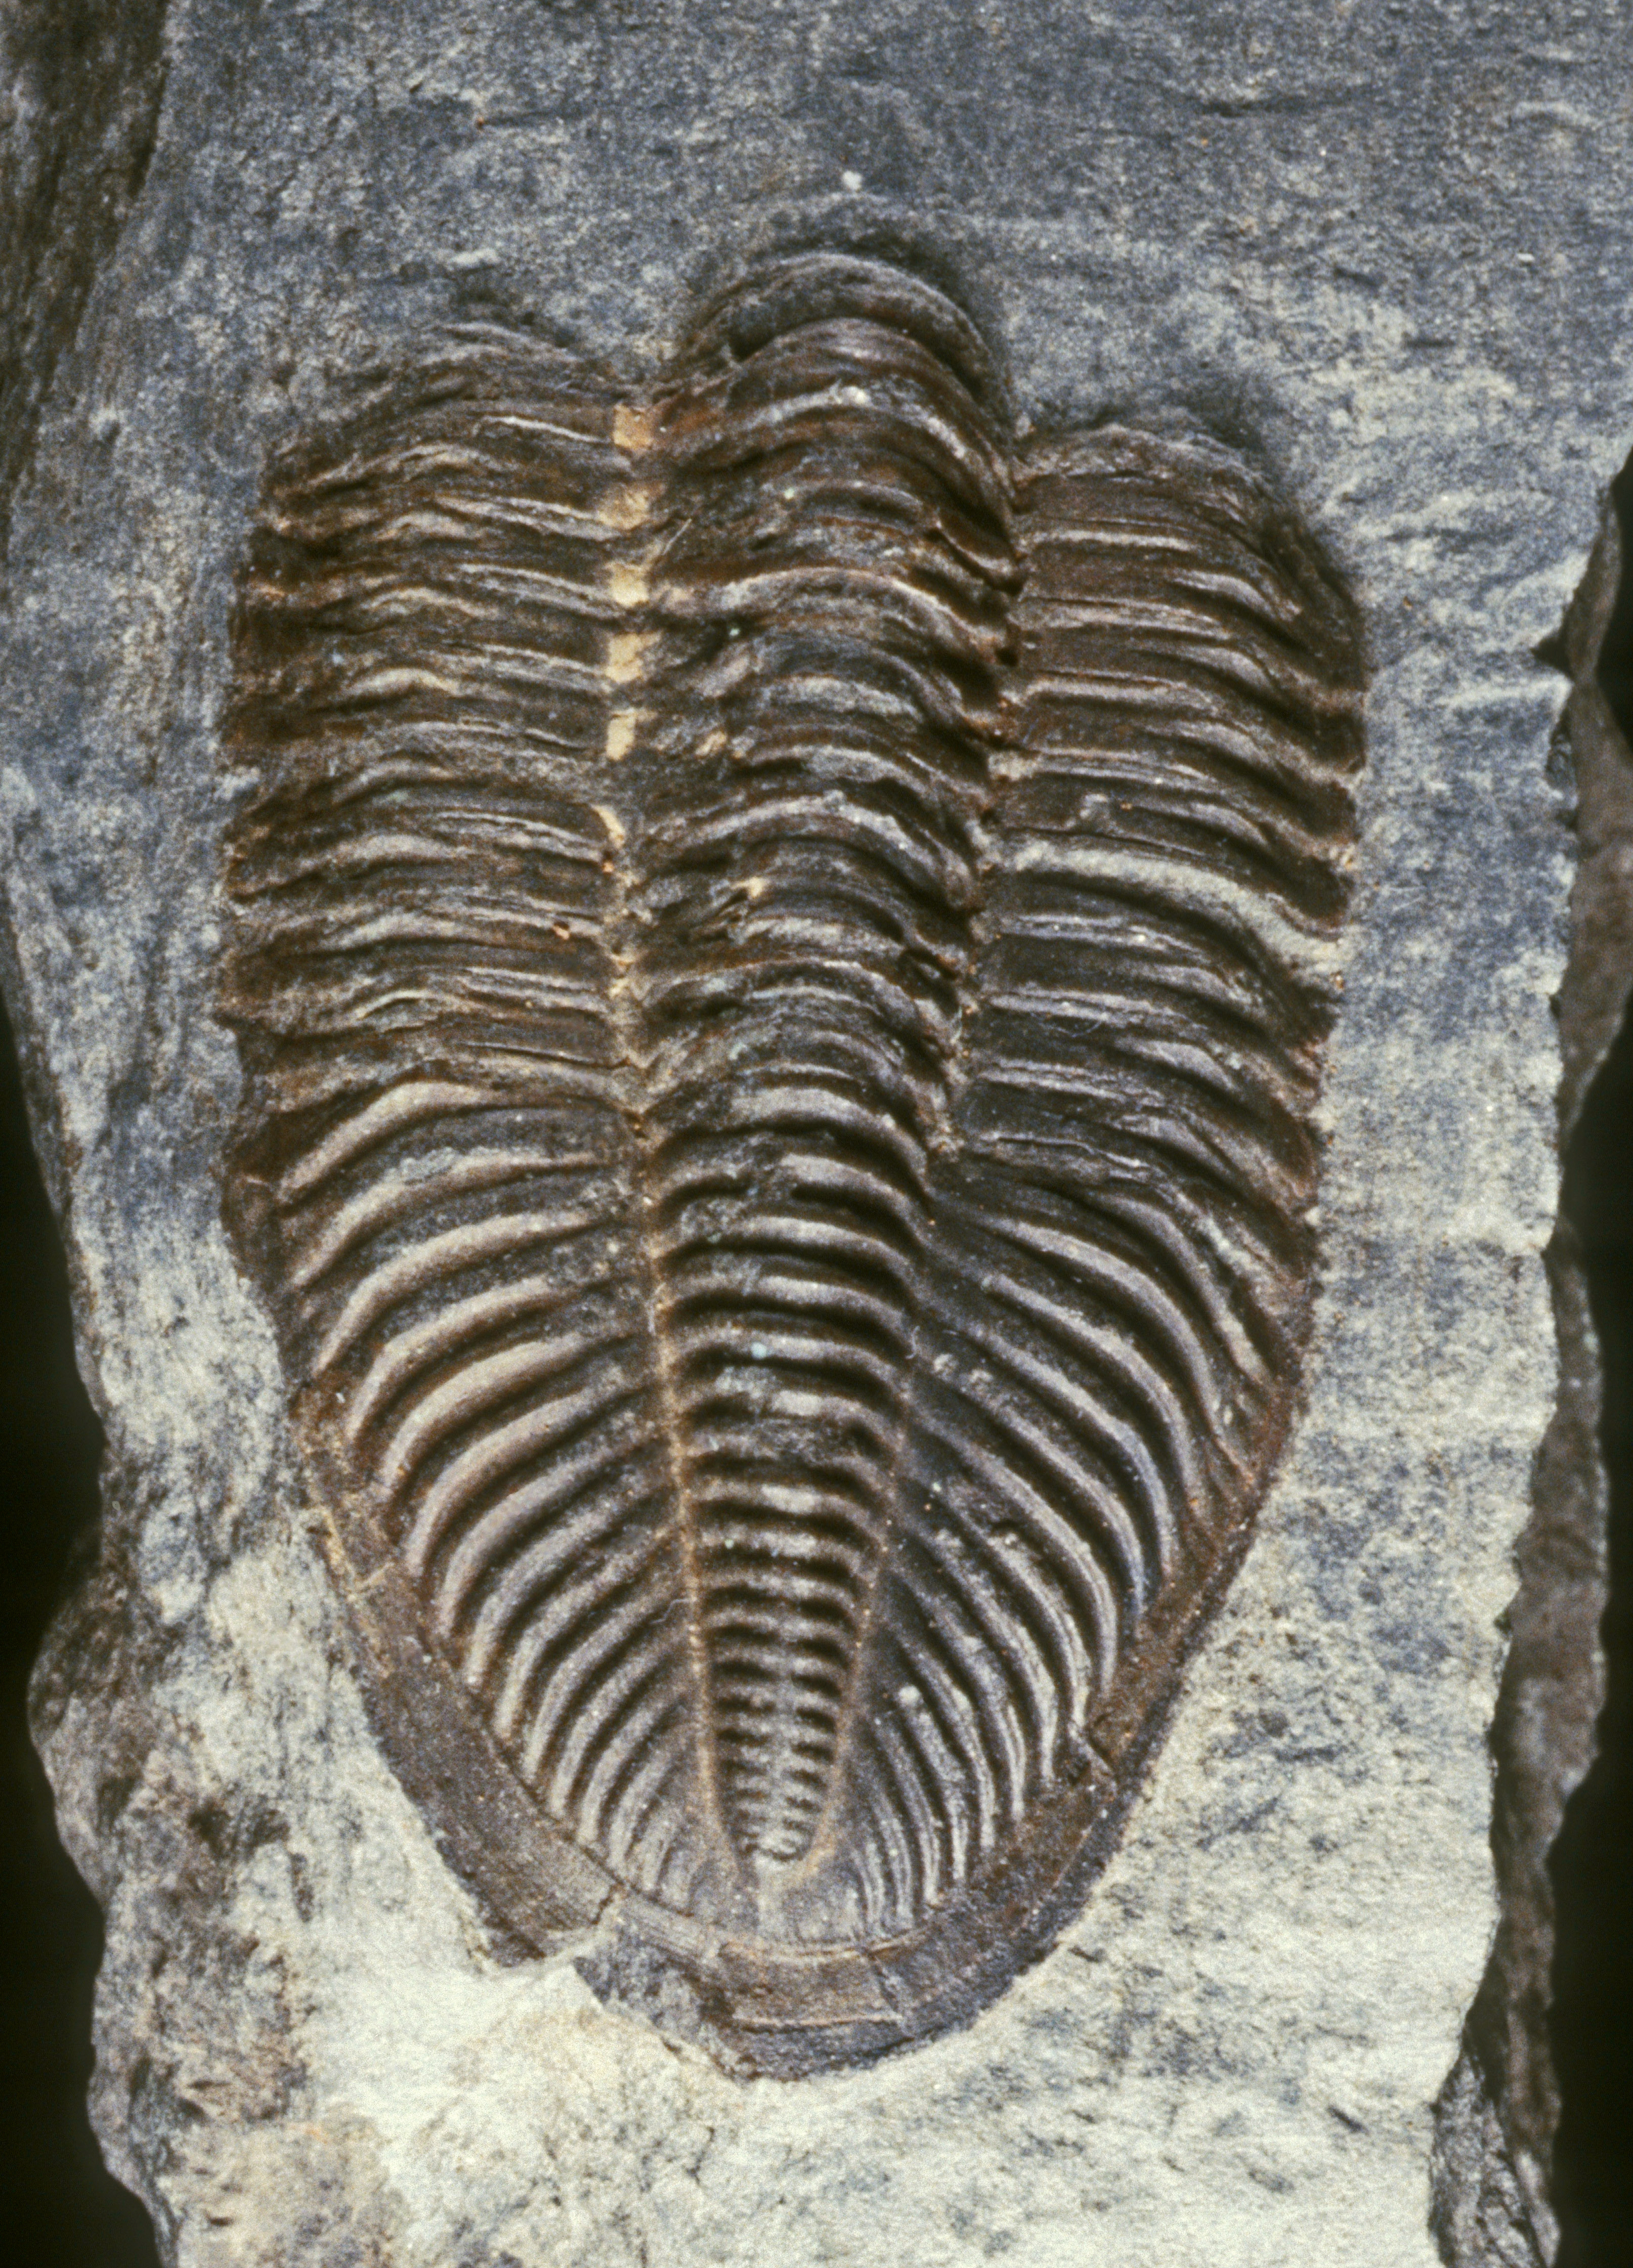 Fossil eines gegliederten Tieres